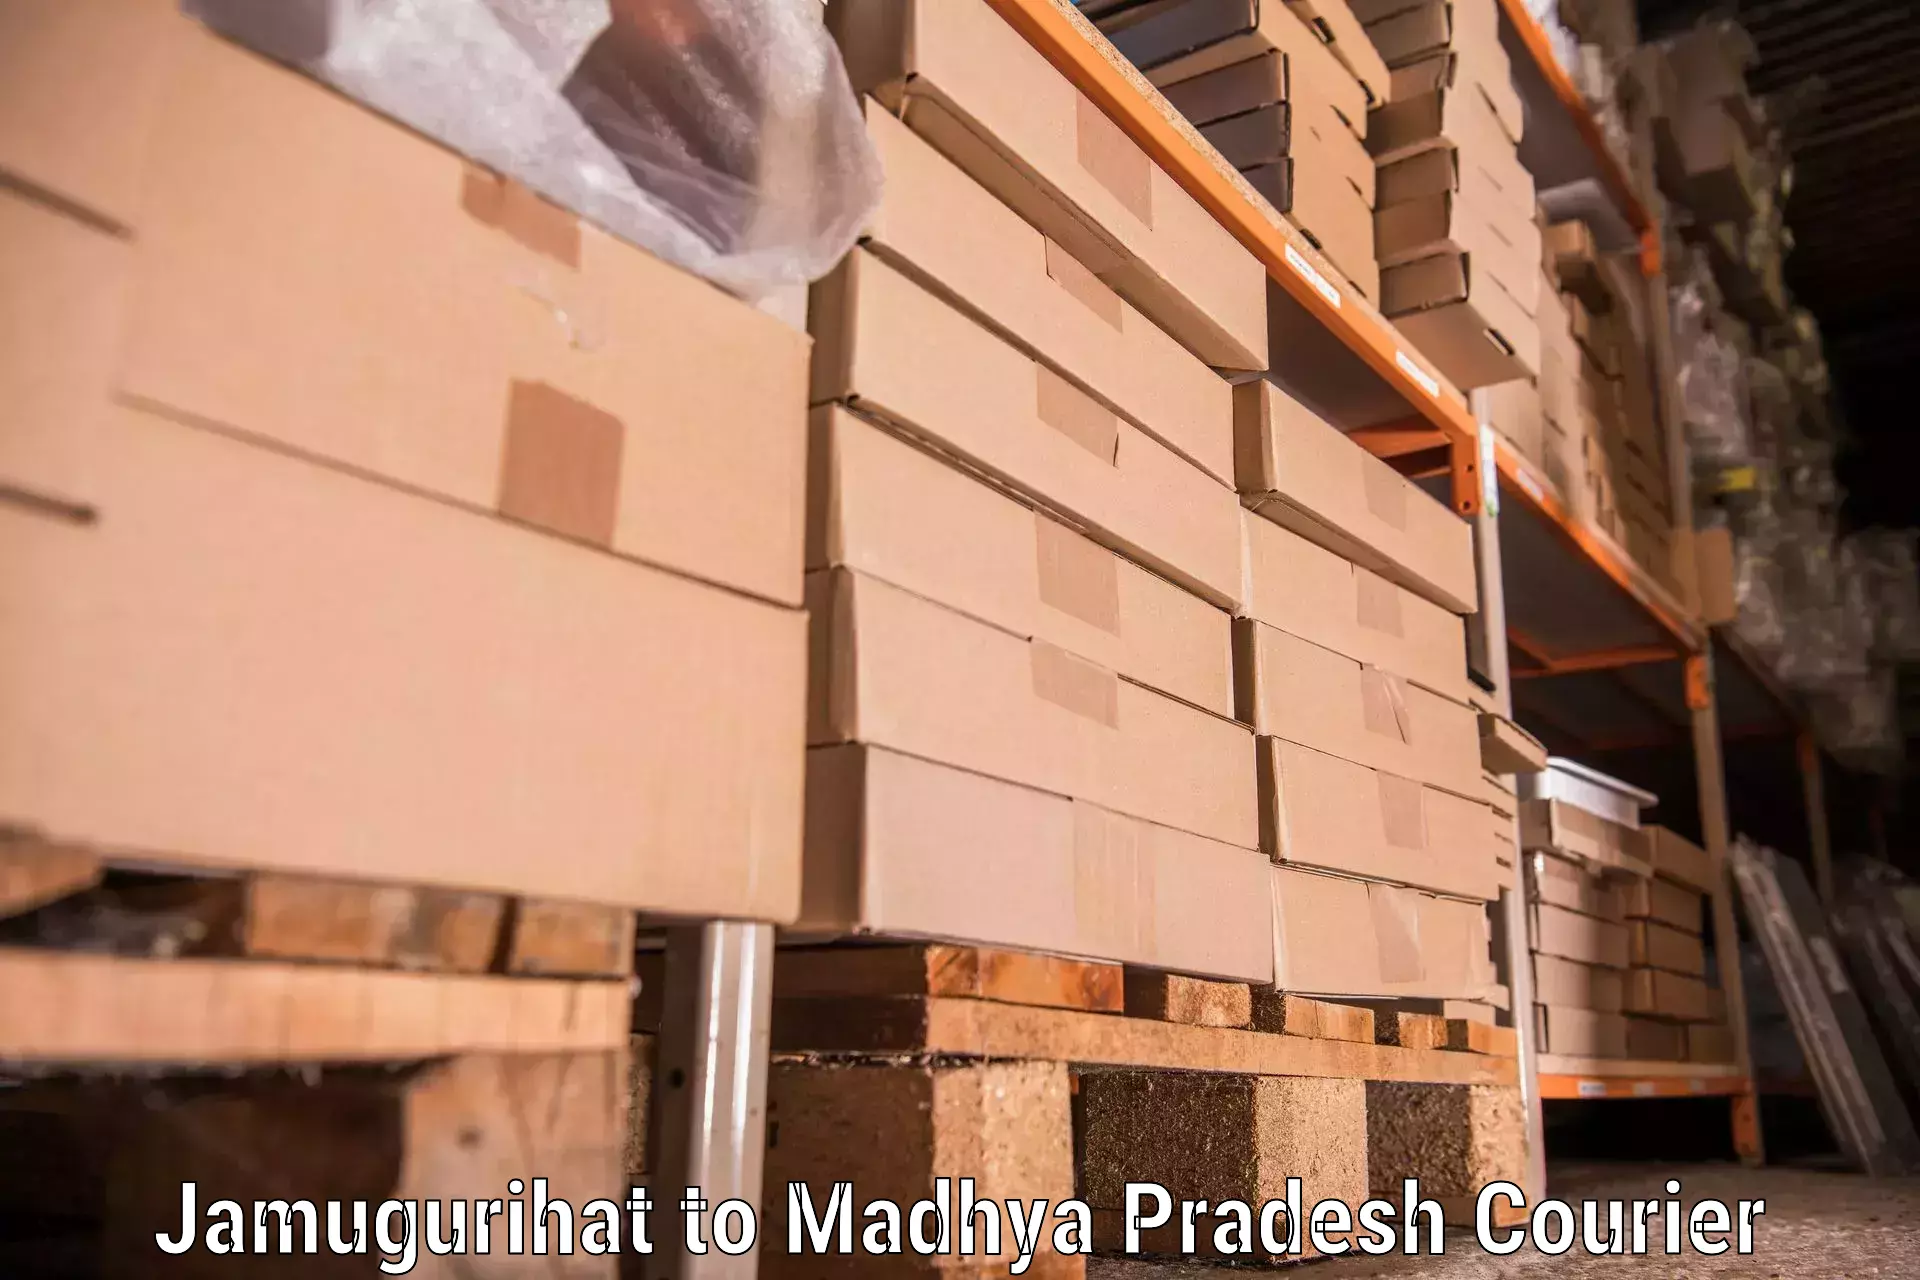 Professional furniture moving Jamugurihat to Nalkheda